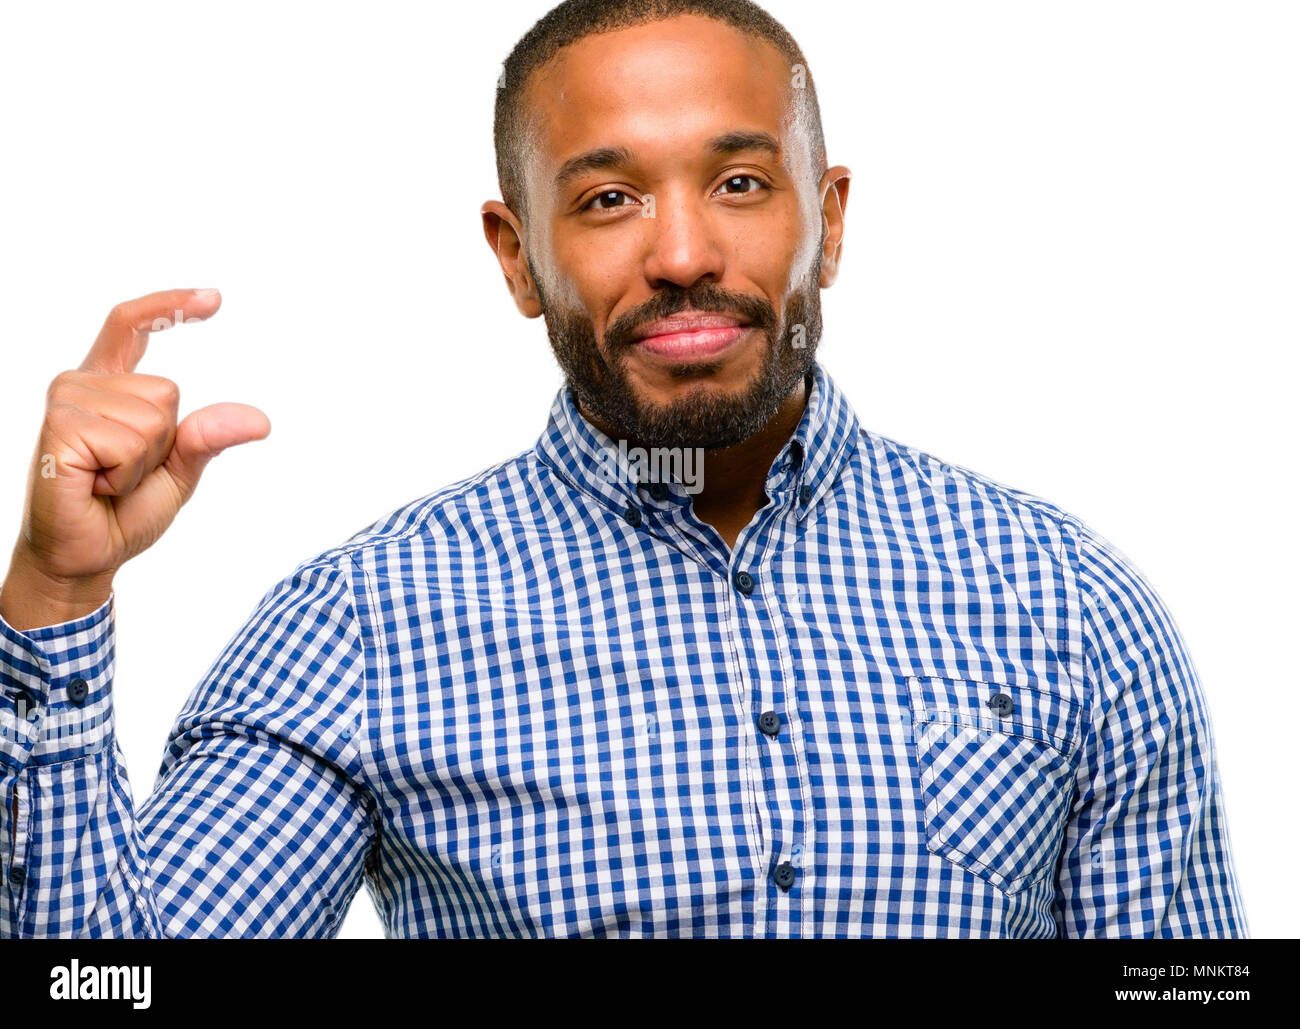 Afrikanische amerikanische Mann mit Bart Holding etwas sehr winzig, Größe Konzept auf weißem Hintergrund Stockfoto